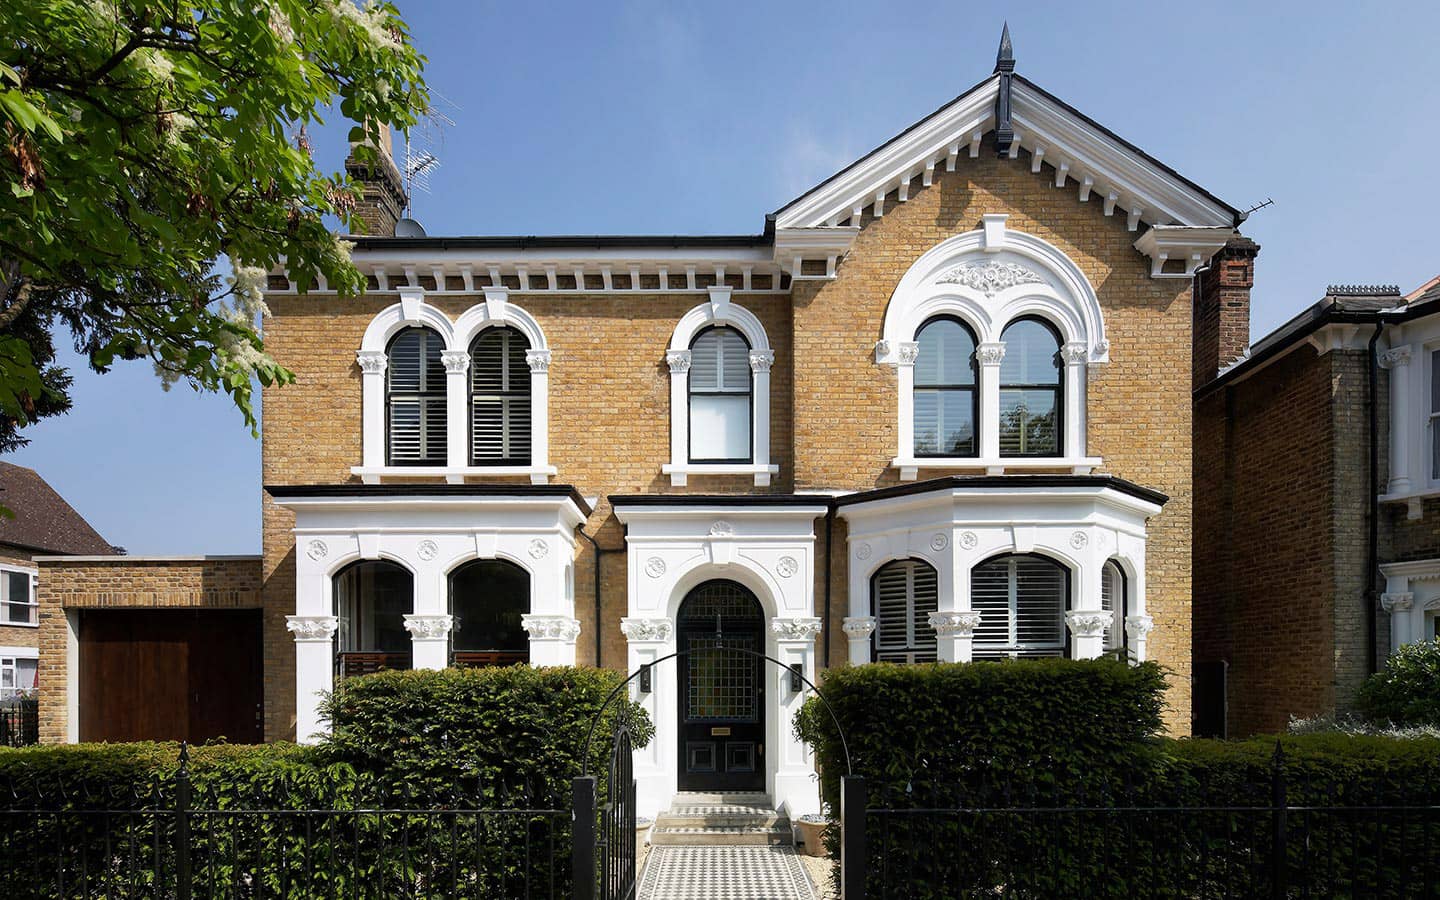 Купить дом в лондоне. Лондон Эдвардианский дом. Григорианский стиль в архитектуре. Особняк Чатем Хаус в Лондоне. Григорианские дома в Лондоне.